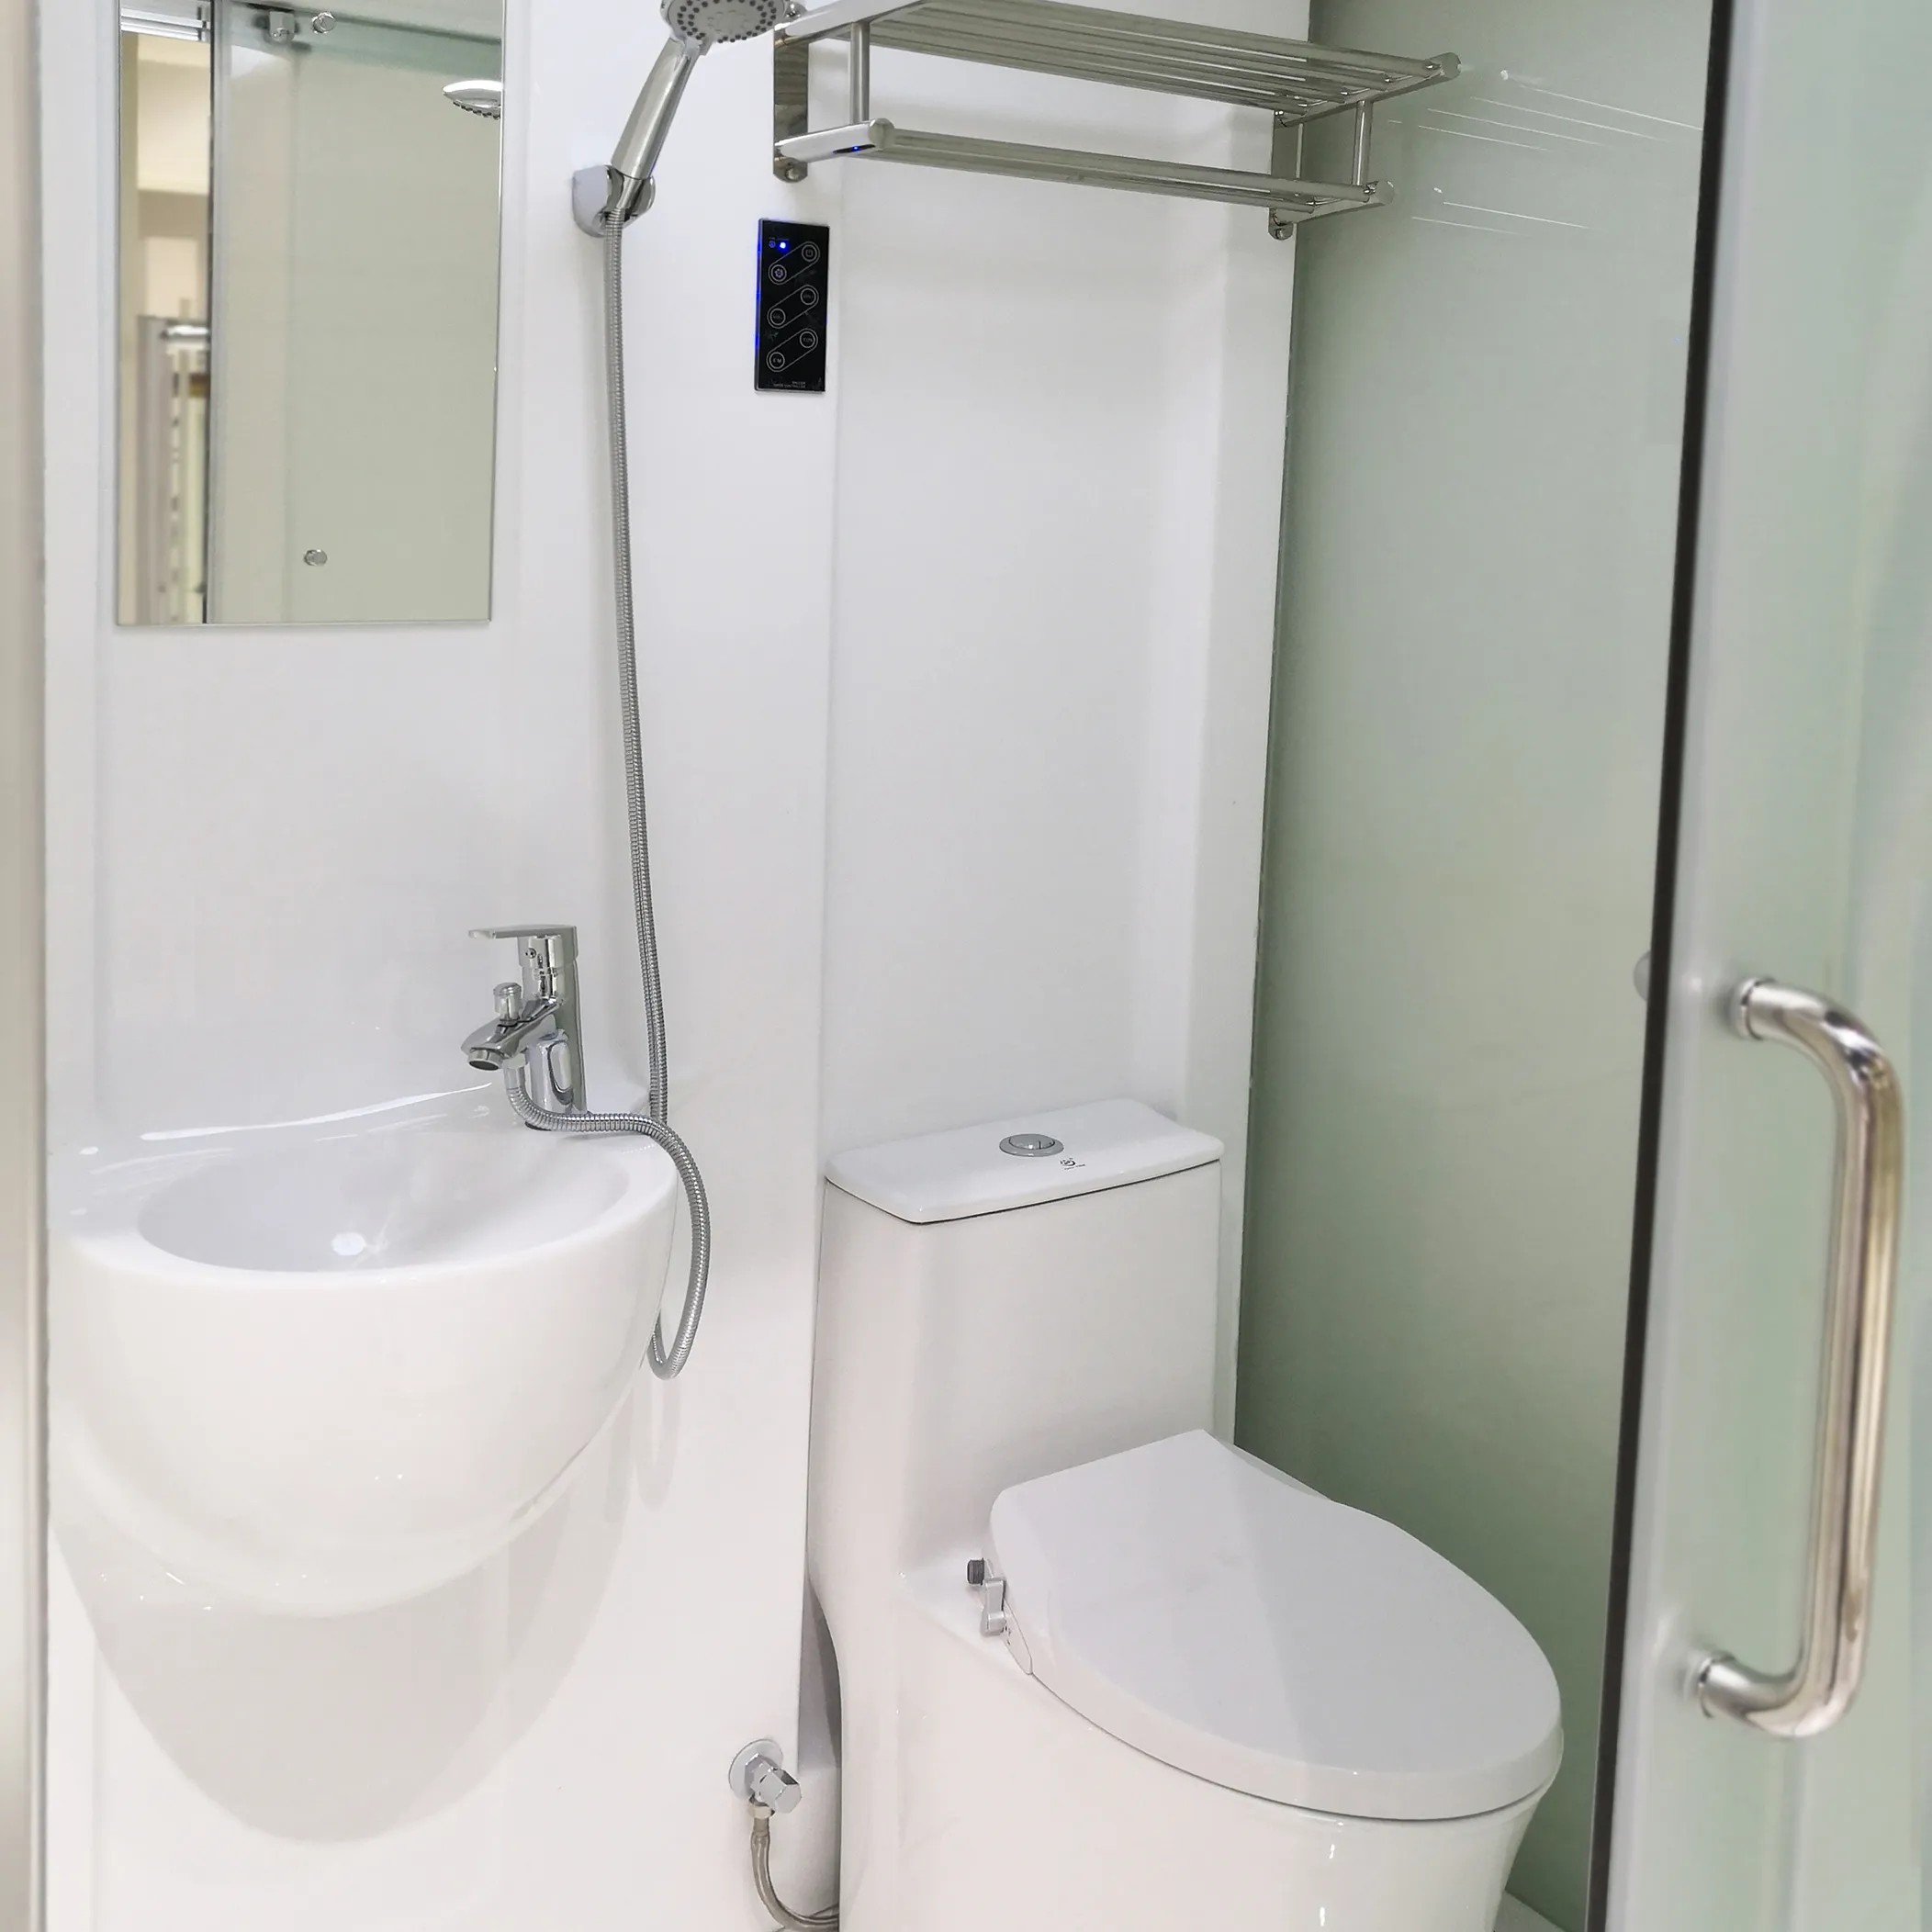 All In One อลูมิเนียมสำเร็จรูปห้องอาบน้ำ,ติดตั้งง่ายล้อมรอบกระจกบานเลื่อนห้องอาบน้ำตู้ห้องโดยสาร